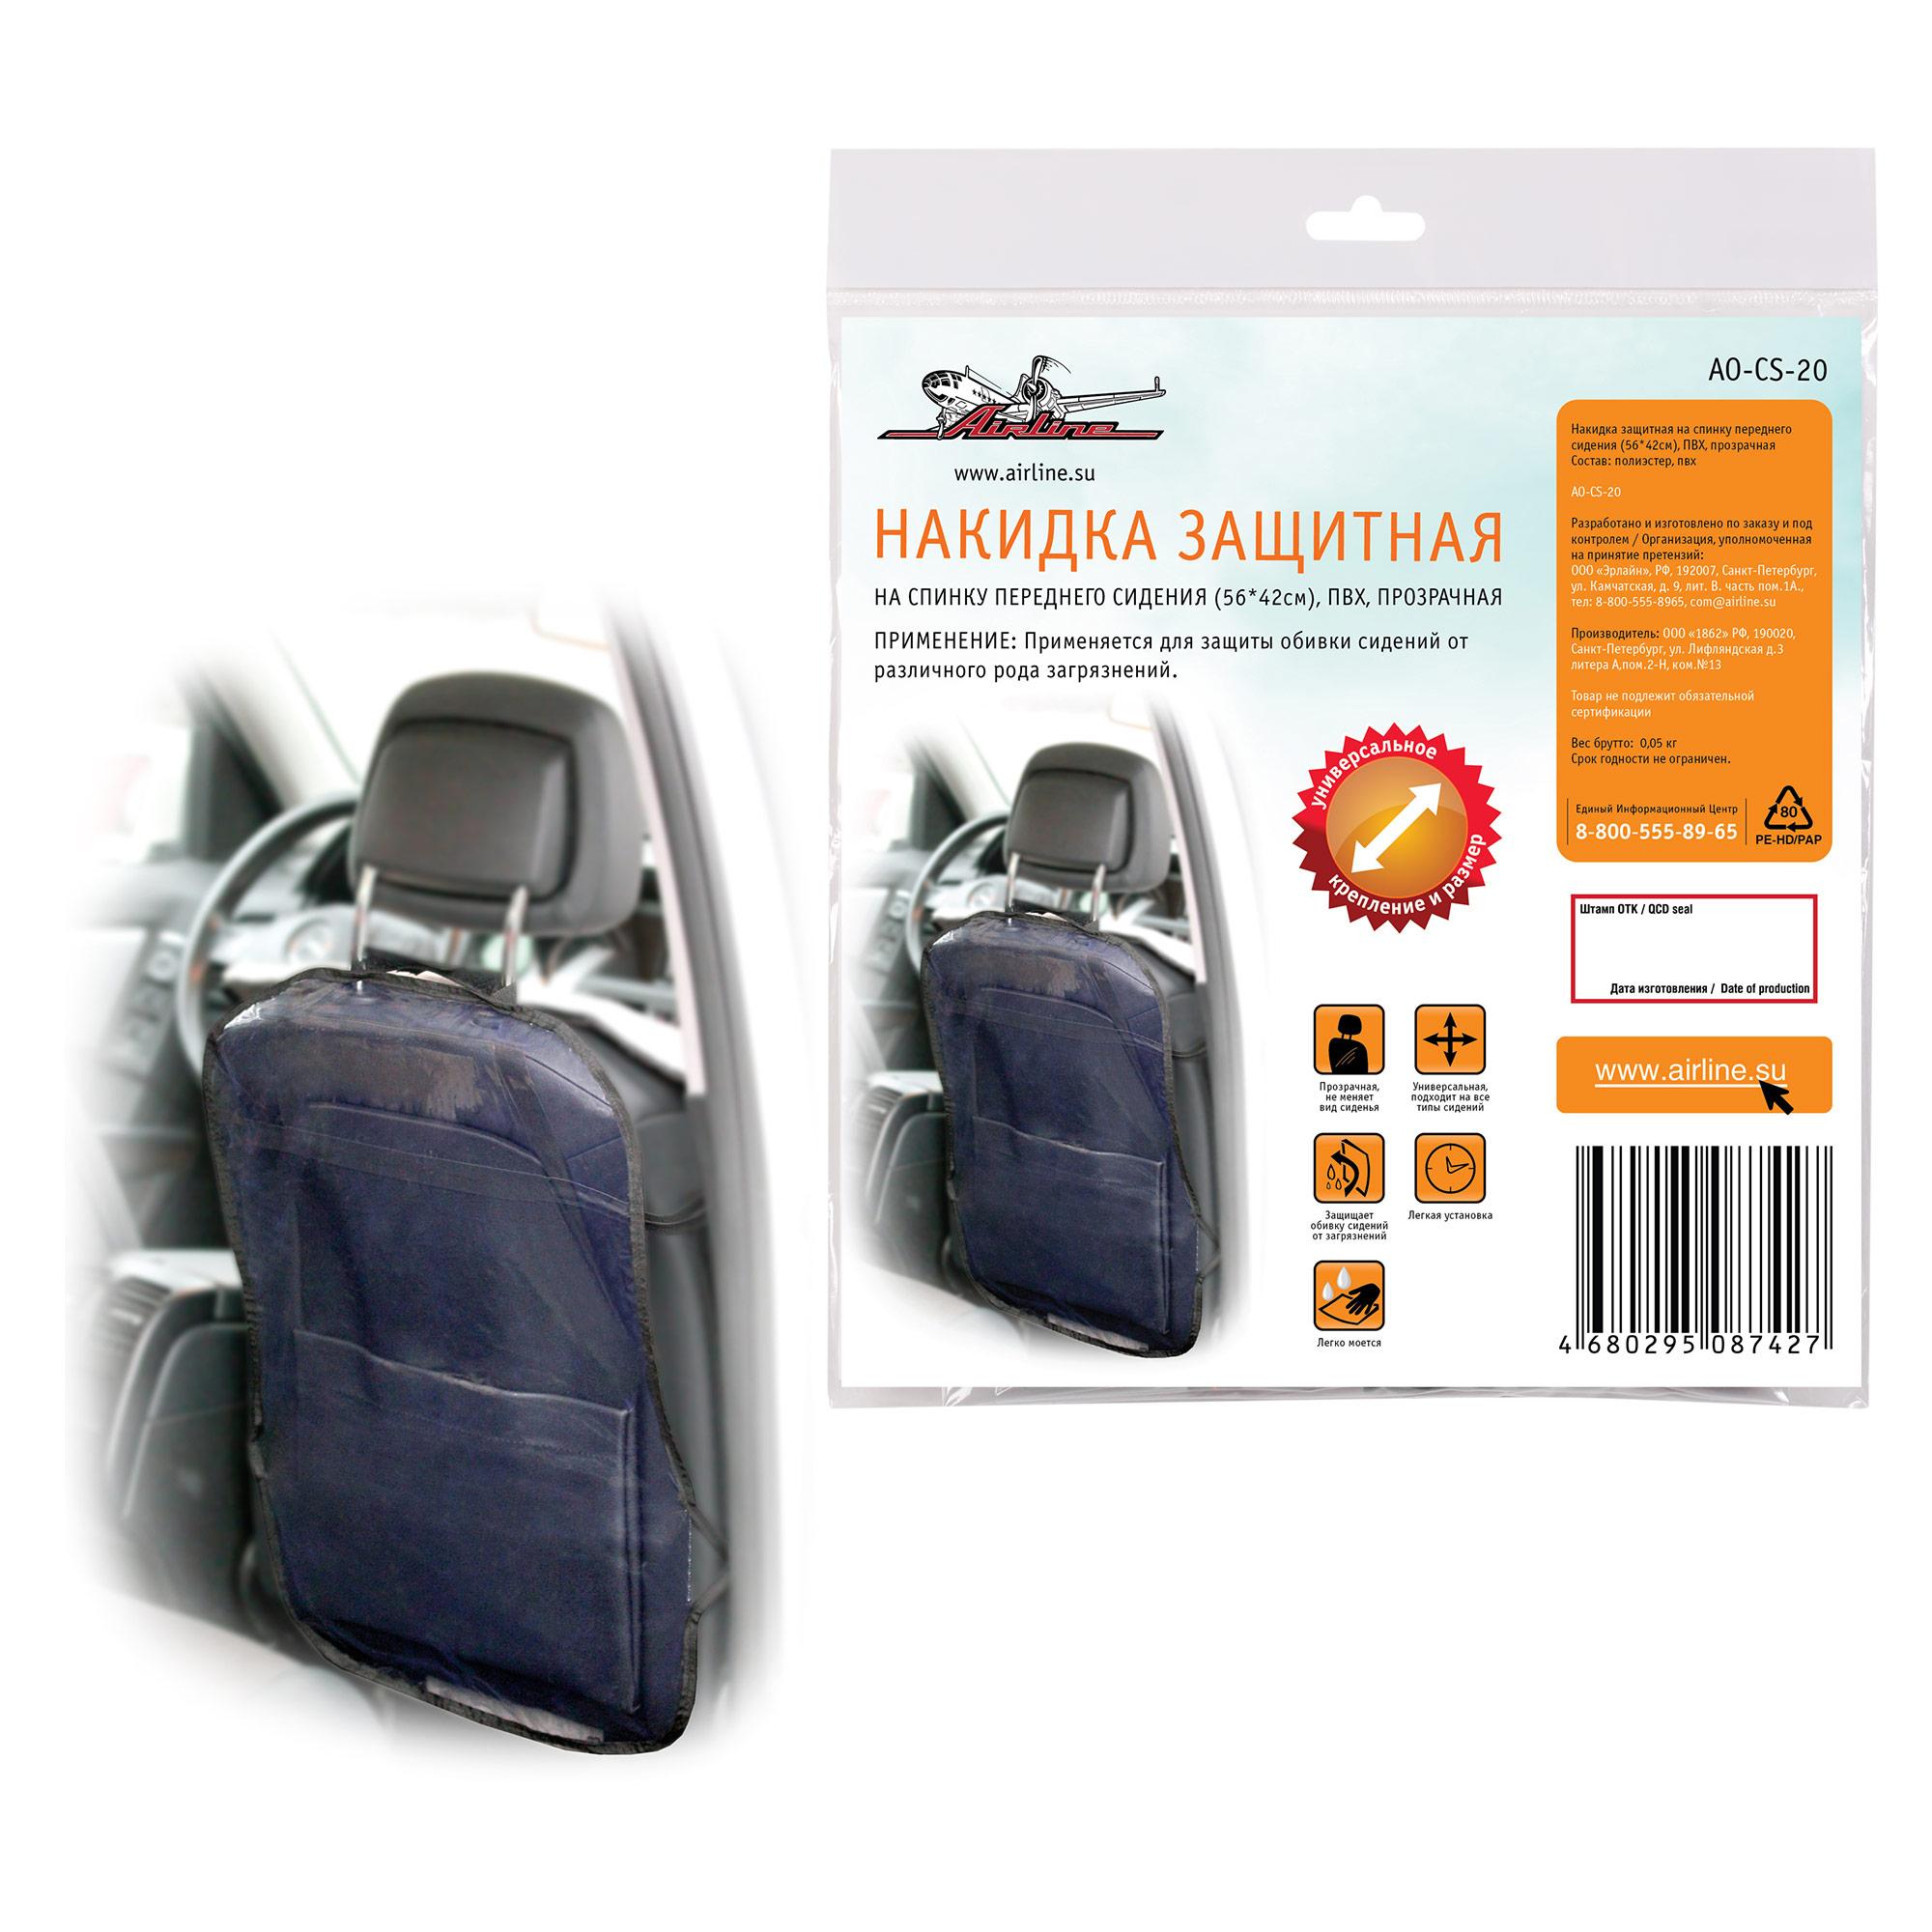 фото Накидка защитная на спинку переднего сидения (56*42см), пвх, прозрачная ao-cs-20 airline